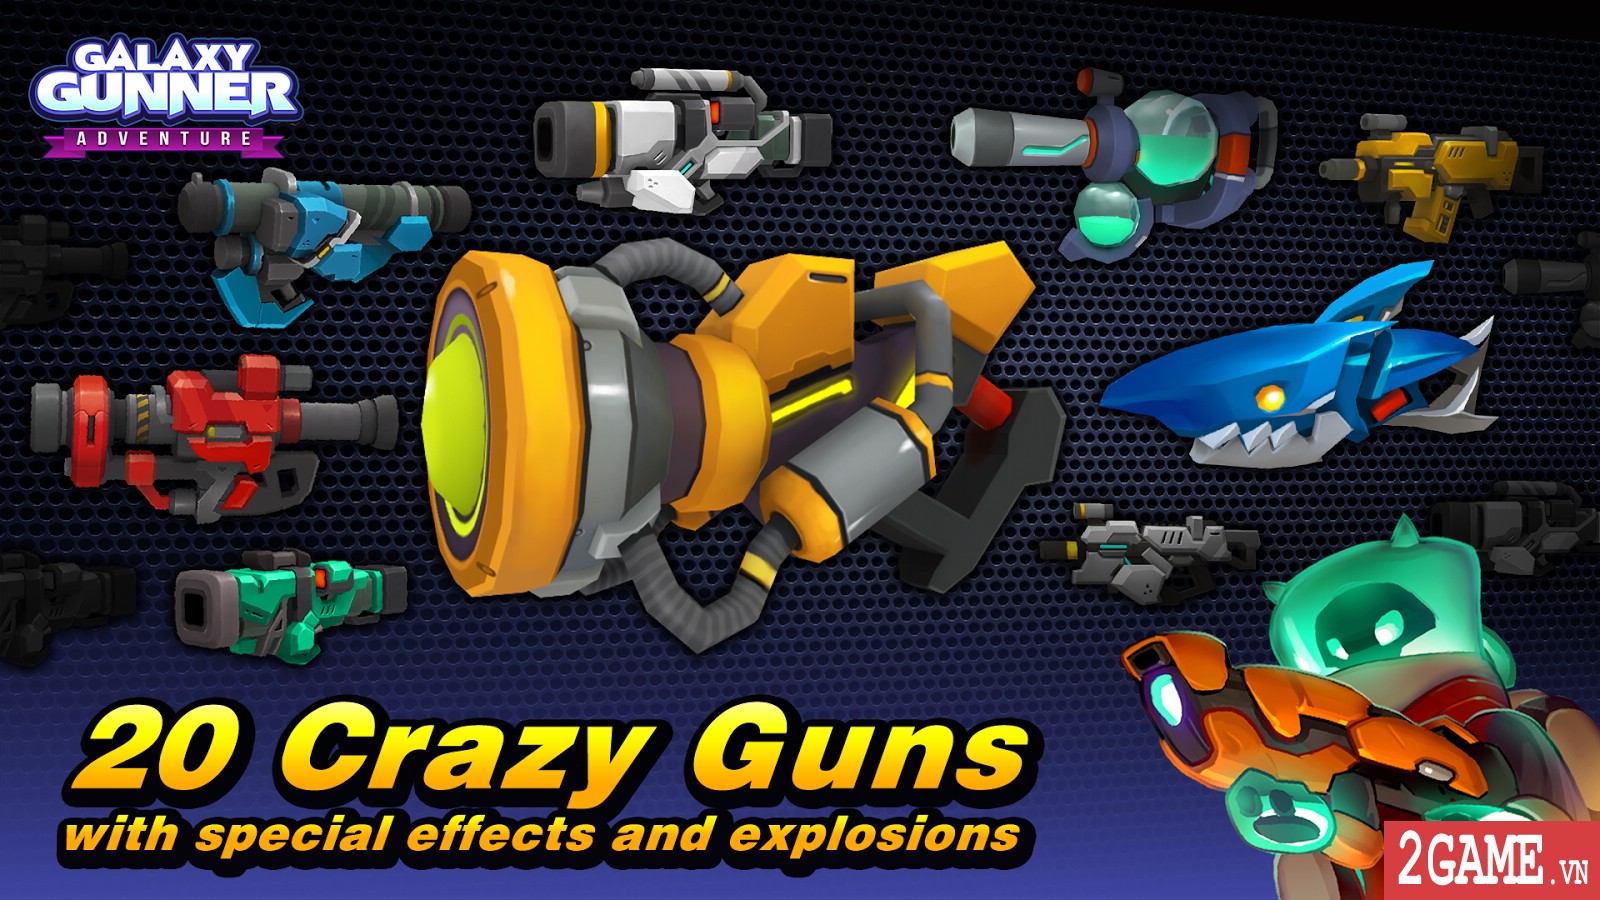 Galaxy gunner: Adventure – Game bắn quái ngoài hành tinh cực kỳ vui nhộn đến từ VNG 1